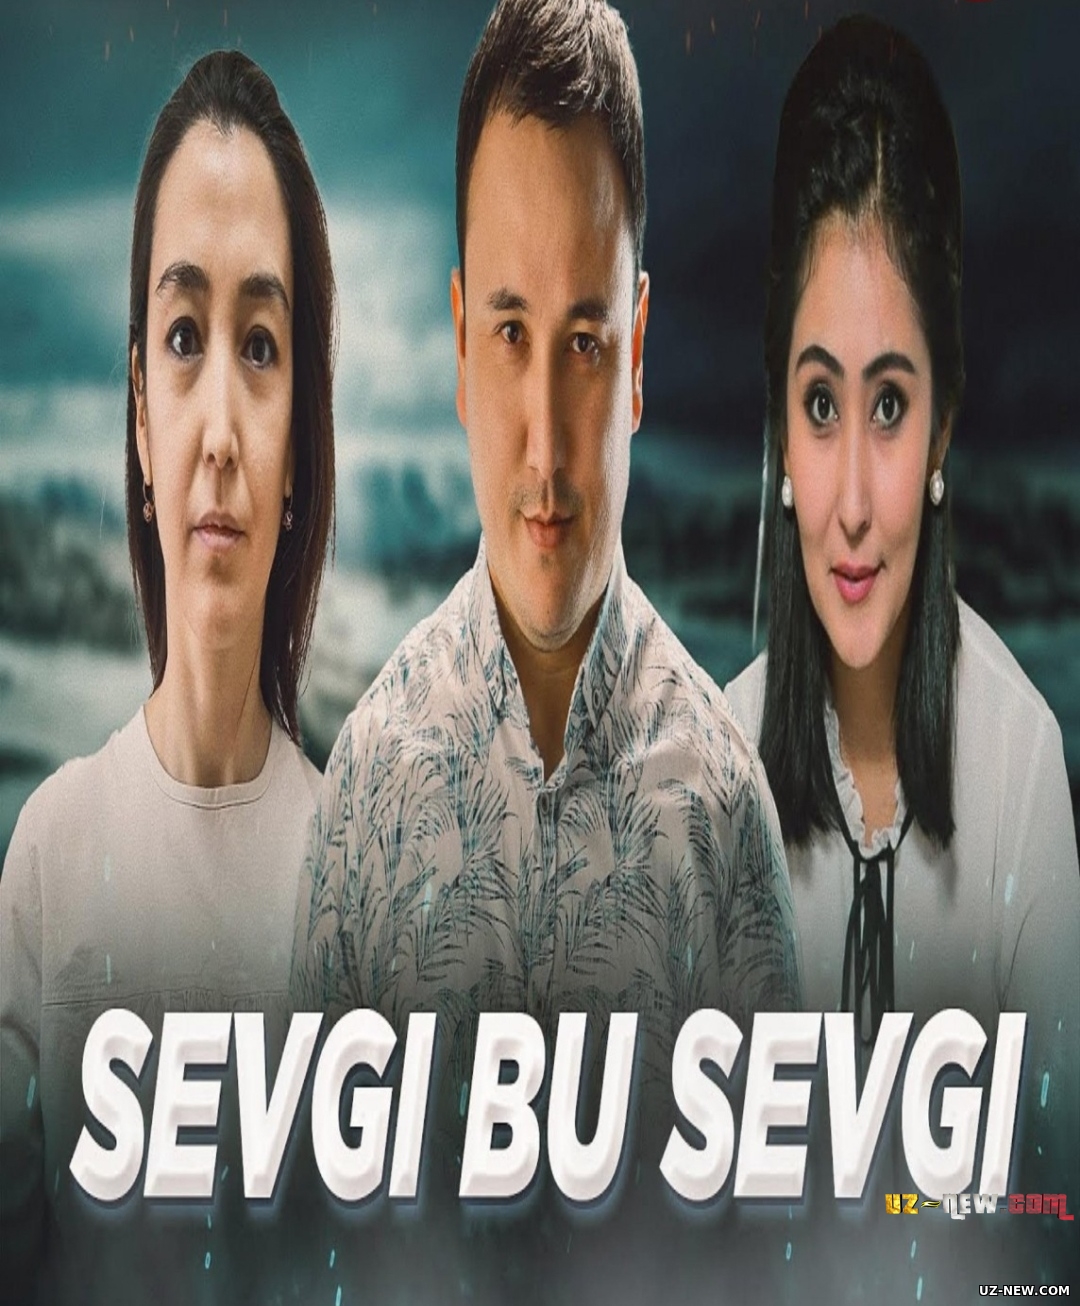 Sevgi bu sevgi (o'zbek film) | Севги бу севги (узбекфильм)